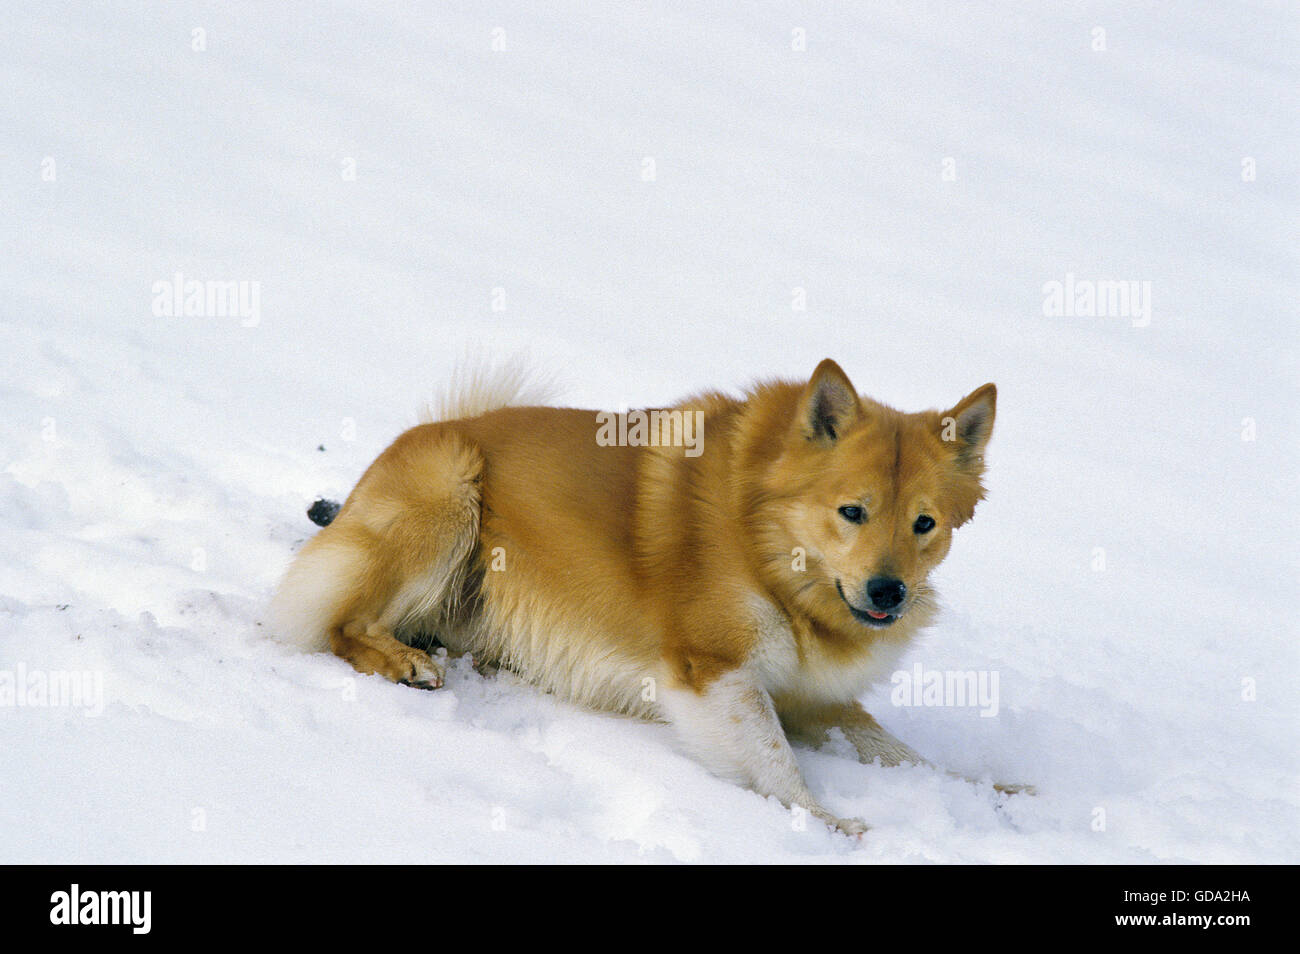 Iceland Dog or Icelandic Sheepdog, on Snow Stock Photo